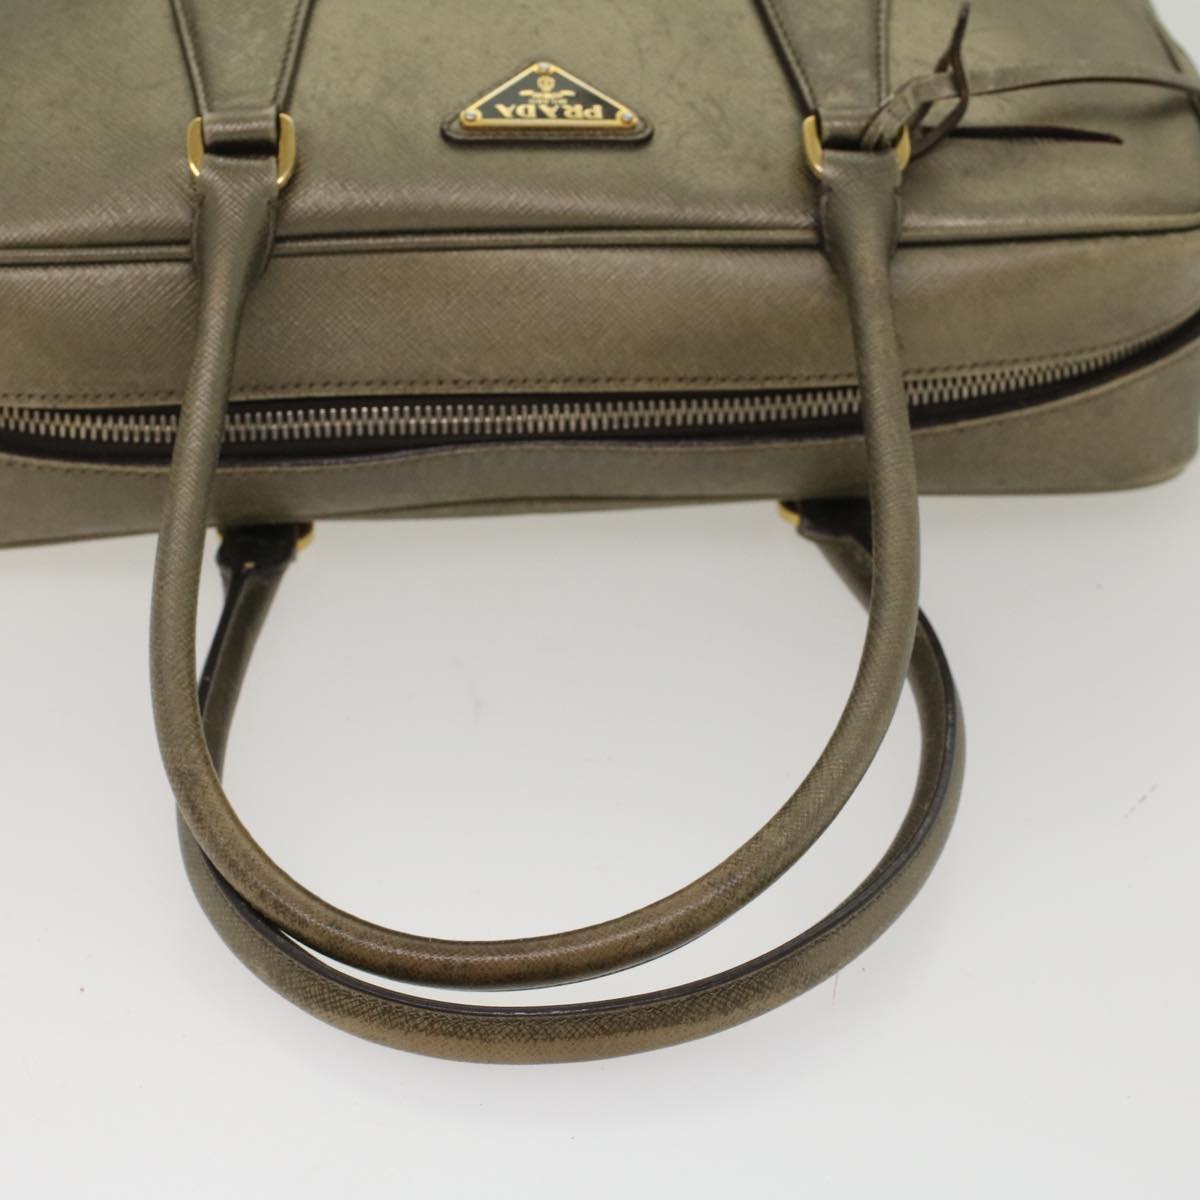 PRADA Safiano Leather Hand Bag Gold Tone Auth 48193